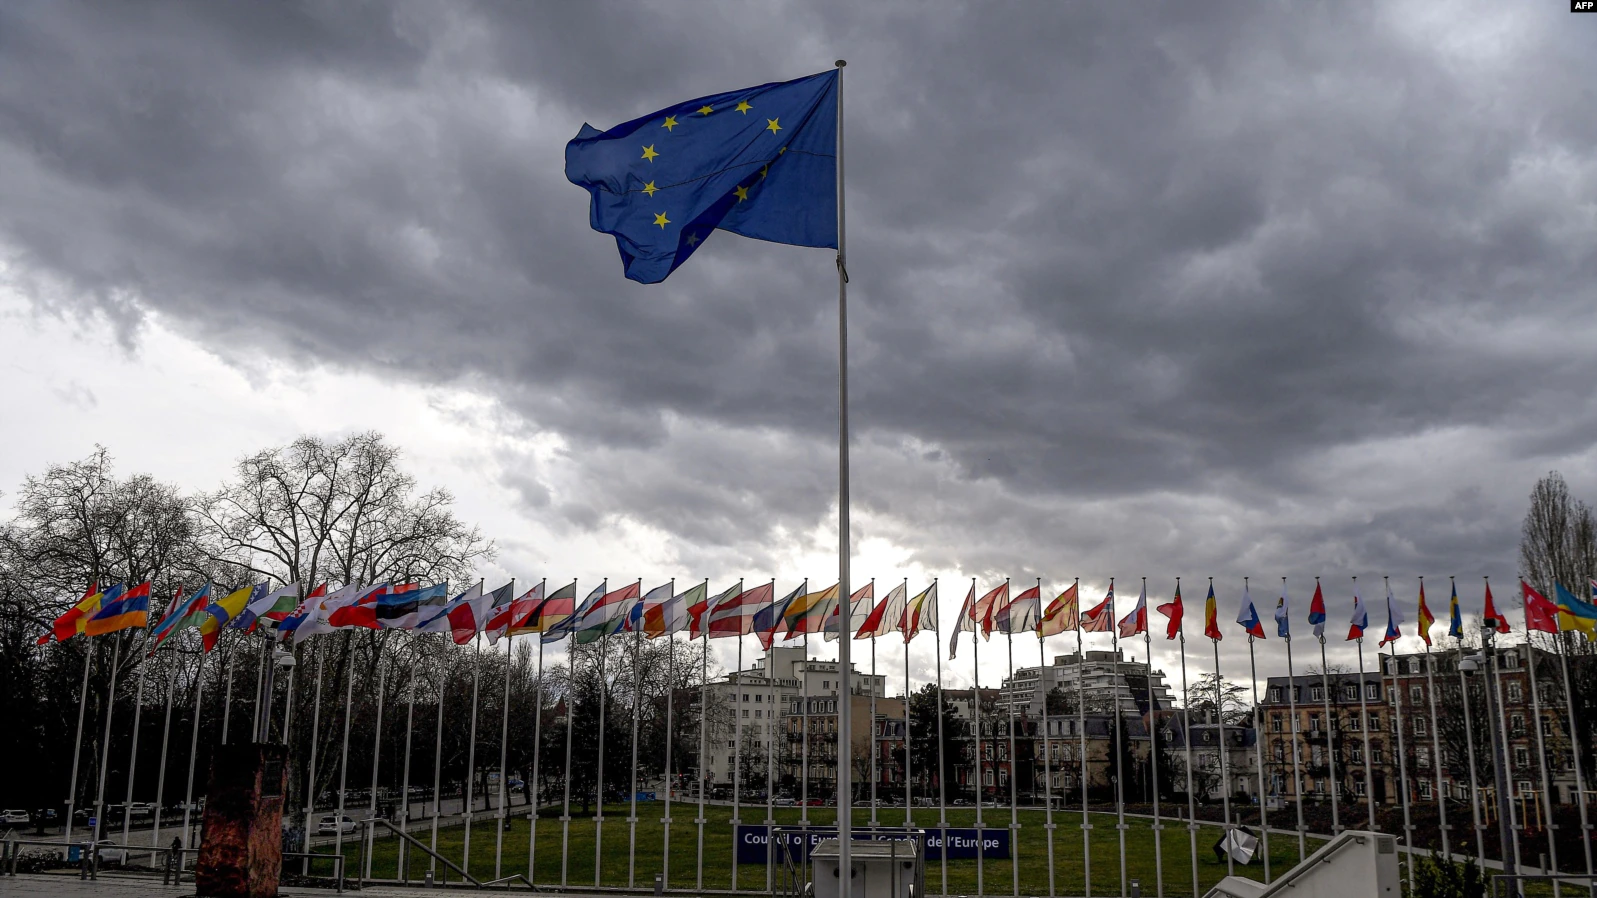 Ռուսաստանը դադարեցրել է մասնակցությունը Եվրոպայի խորհրդի հետ համաձայնագրերին